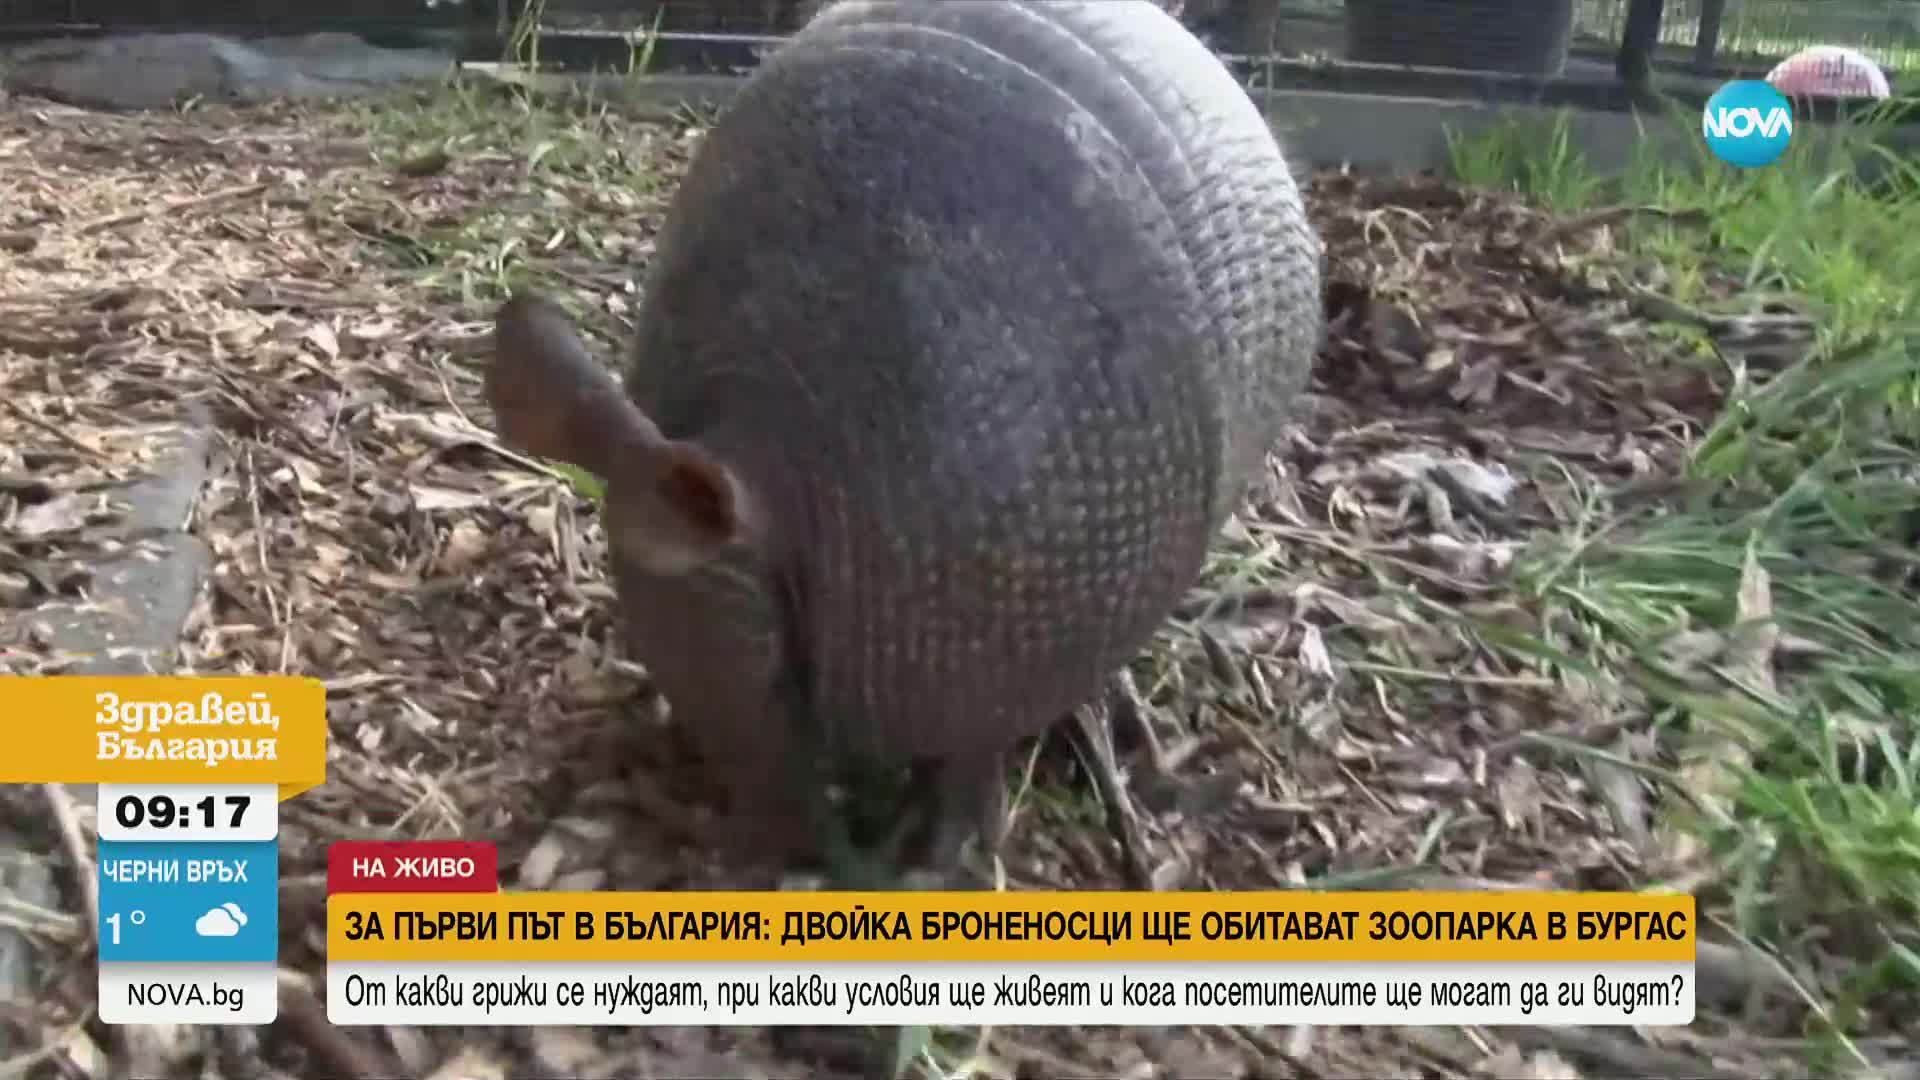 Двойка броненосци са новите обитатели в бургаския зоопарк